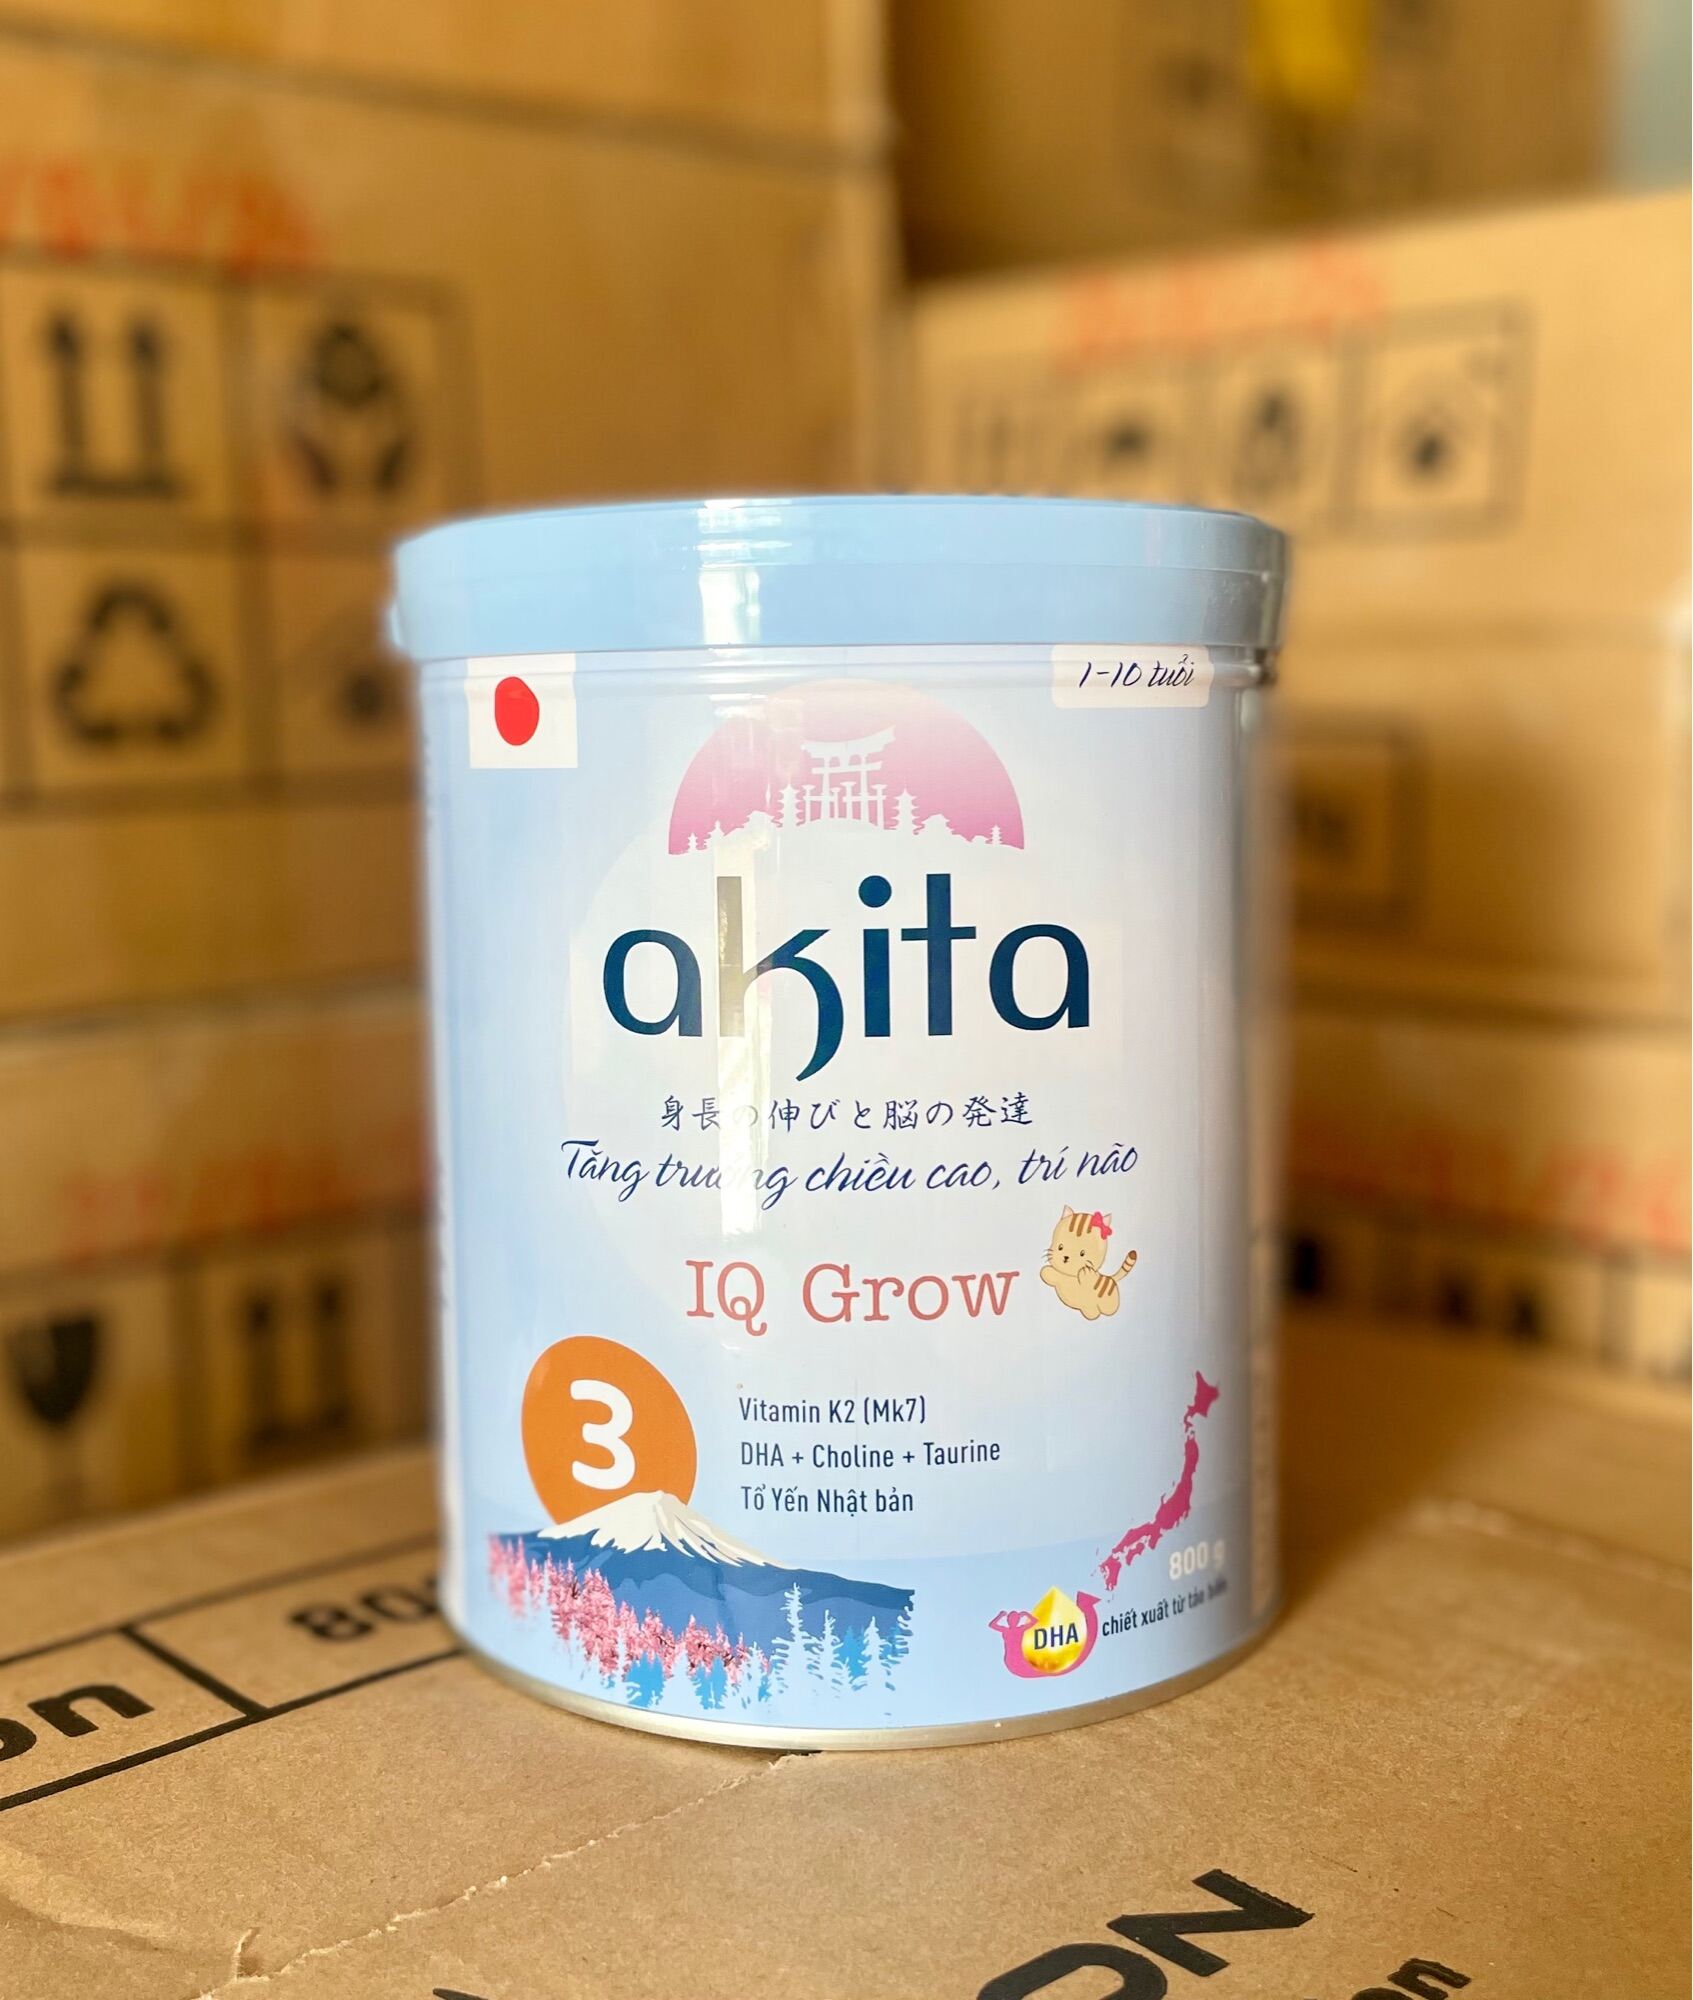 Sữa Akita IQ Grow Chiều cao trí não -Tổ Yến Nhật Bản 1-10 tuổi 800g